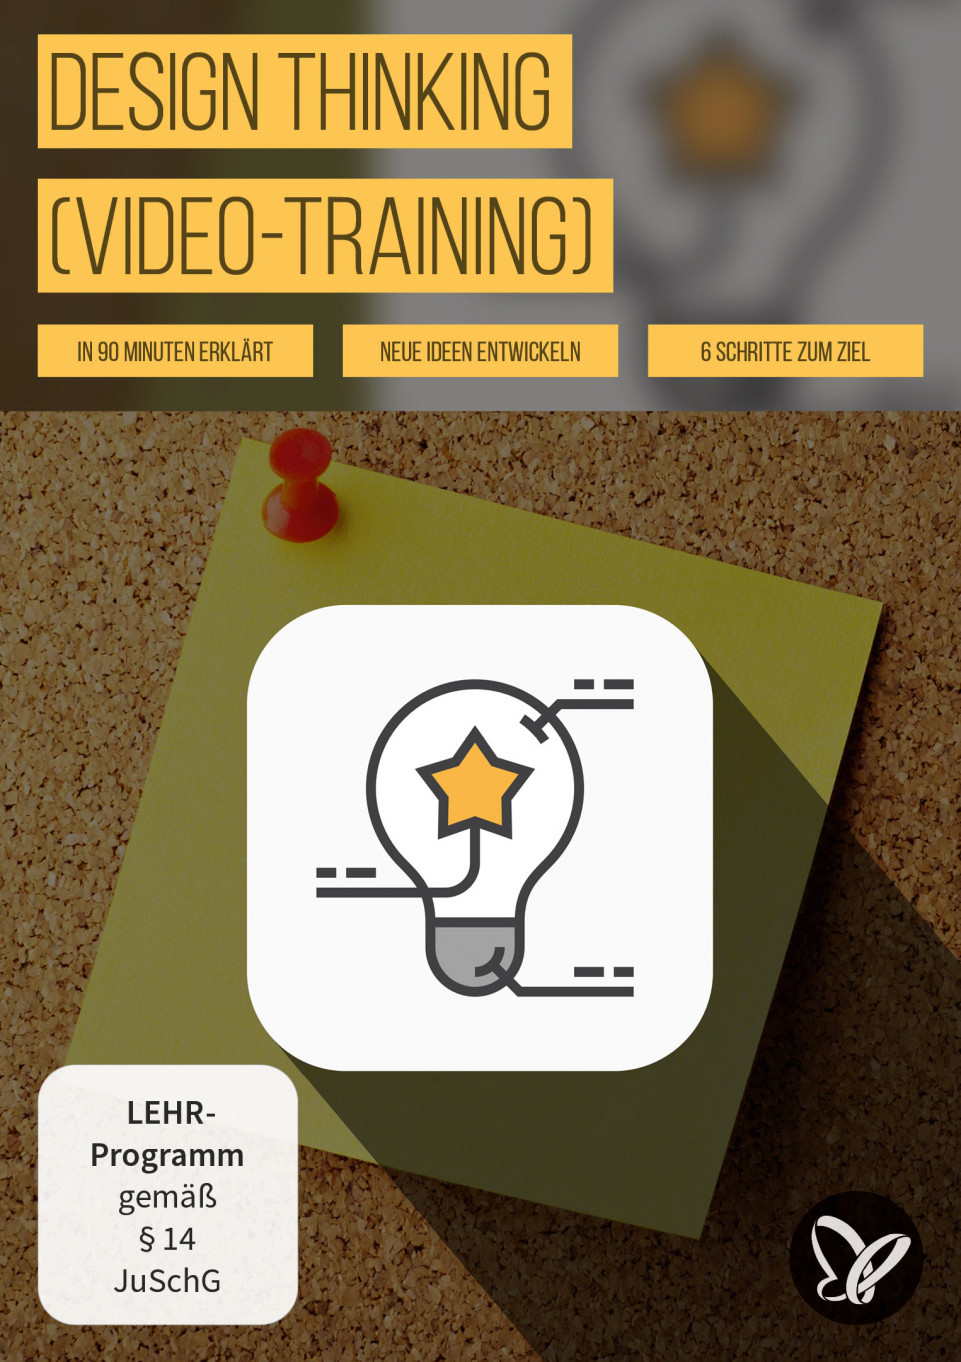 Design Thinking: mit Methode zu Ideen und Lösungen (Video-Training)